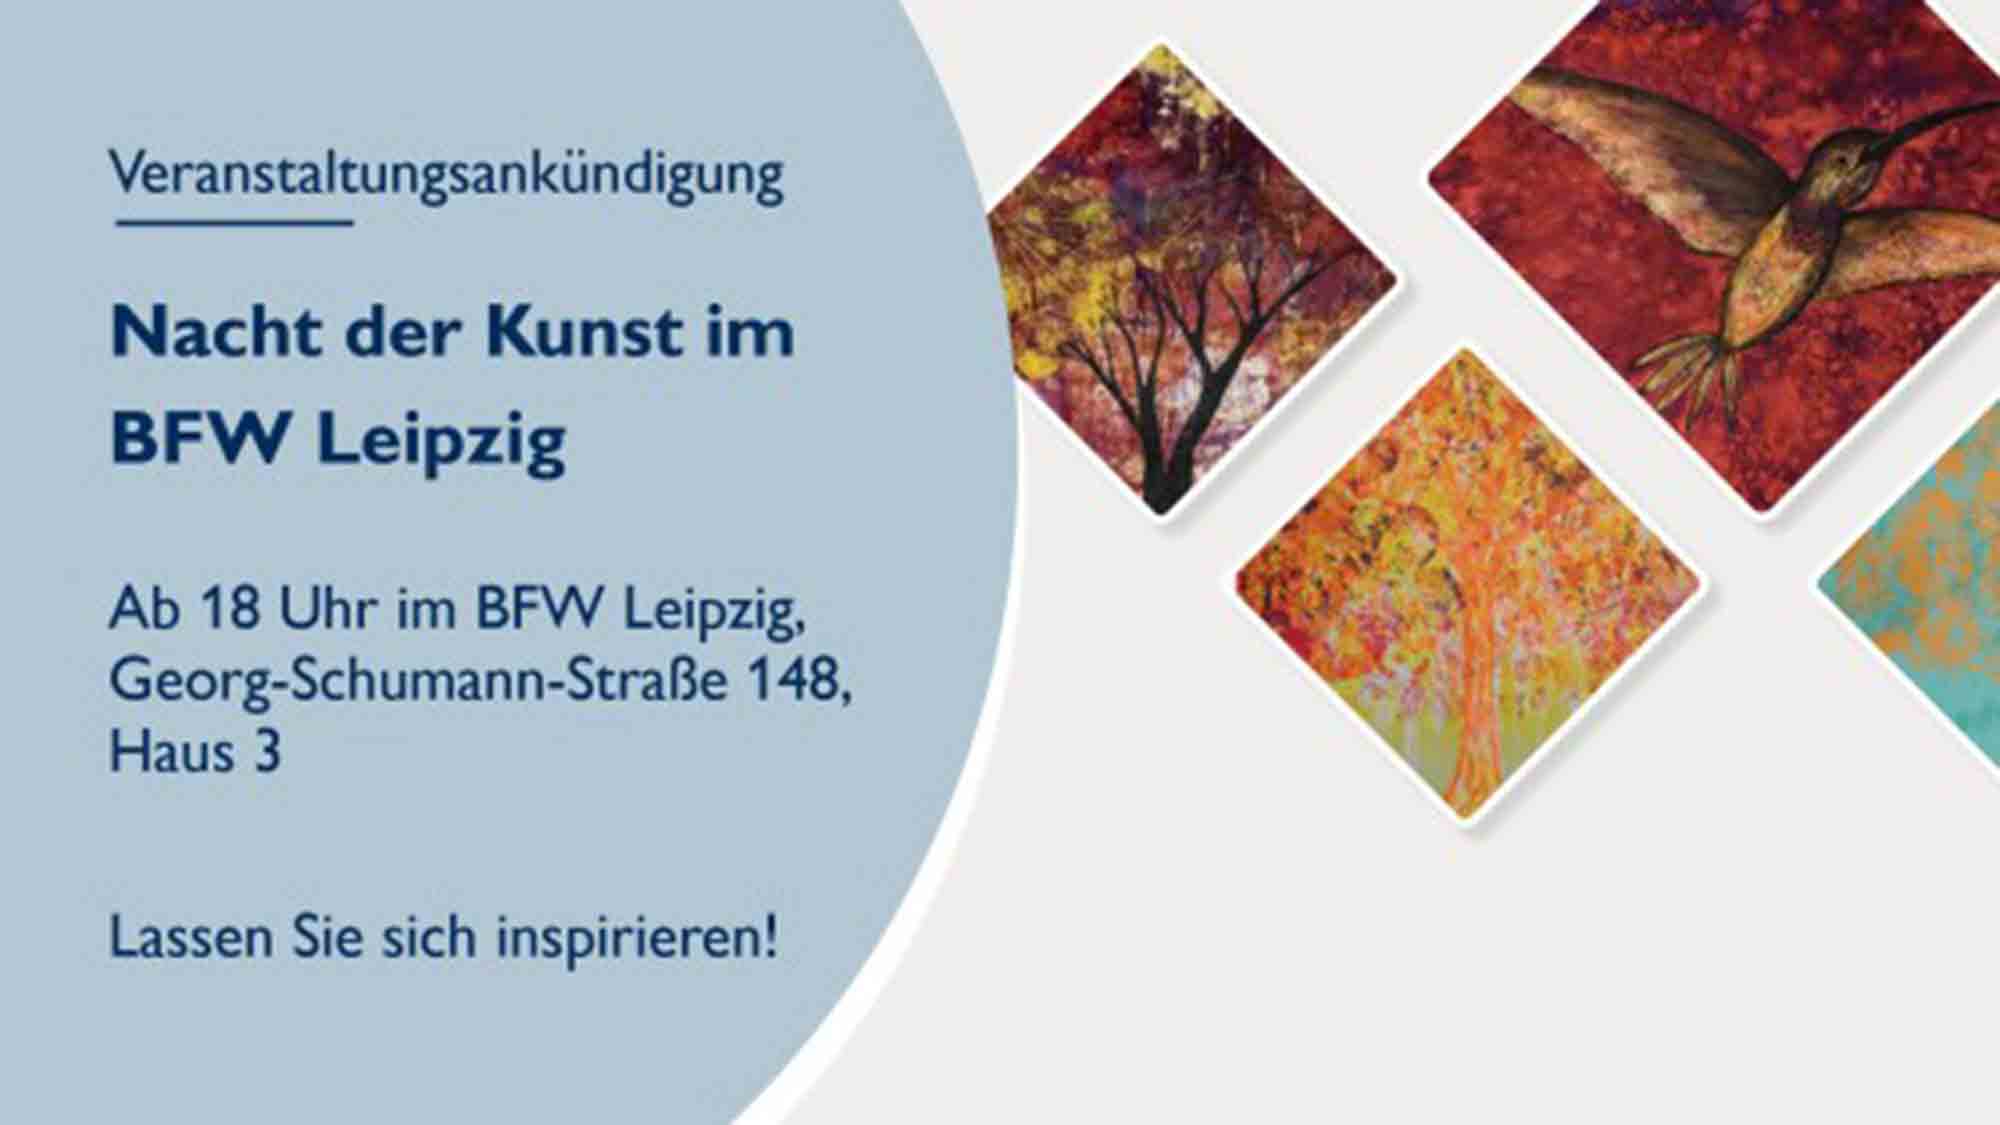 Nacht der Kunst, BFW Leipzig auch 2023 wieder beim Kunstfestival mit dabei, 2. September 2023